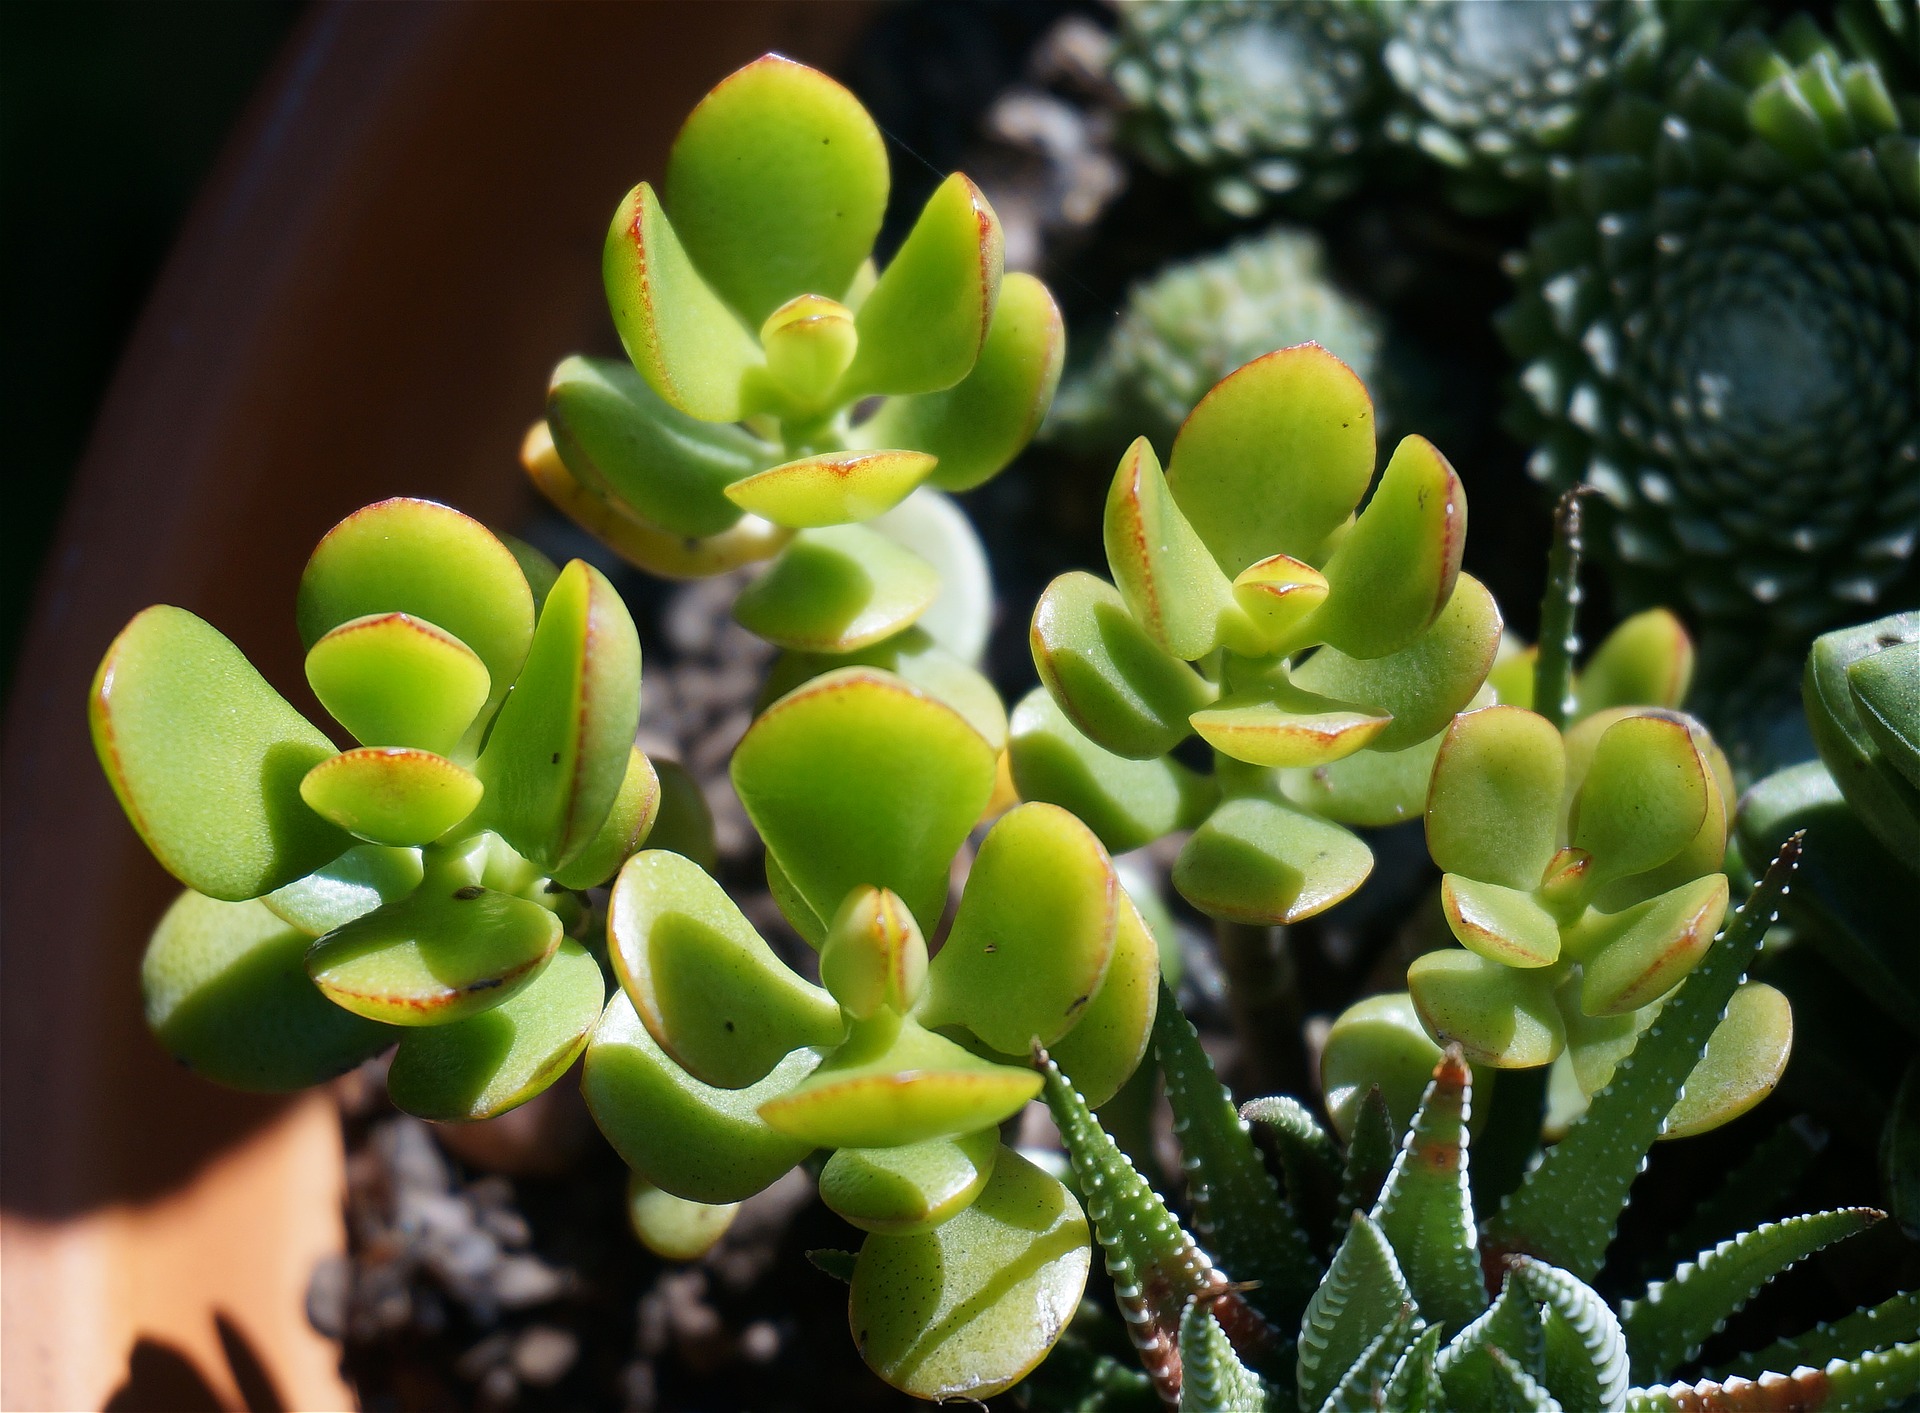 La plante de jade est sensée absorber près de 91 % du toluène présent dans l'atmosphère (Image: Leoleobobeo / Pixabay)